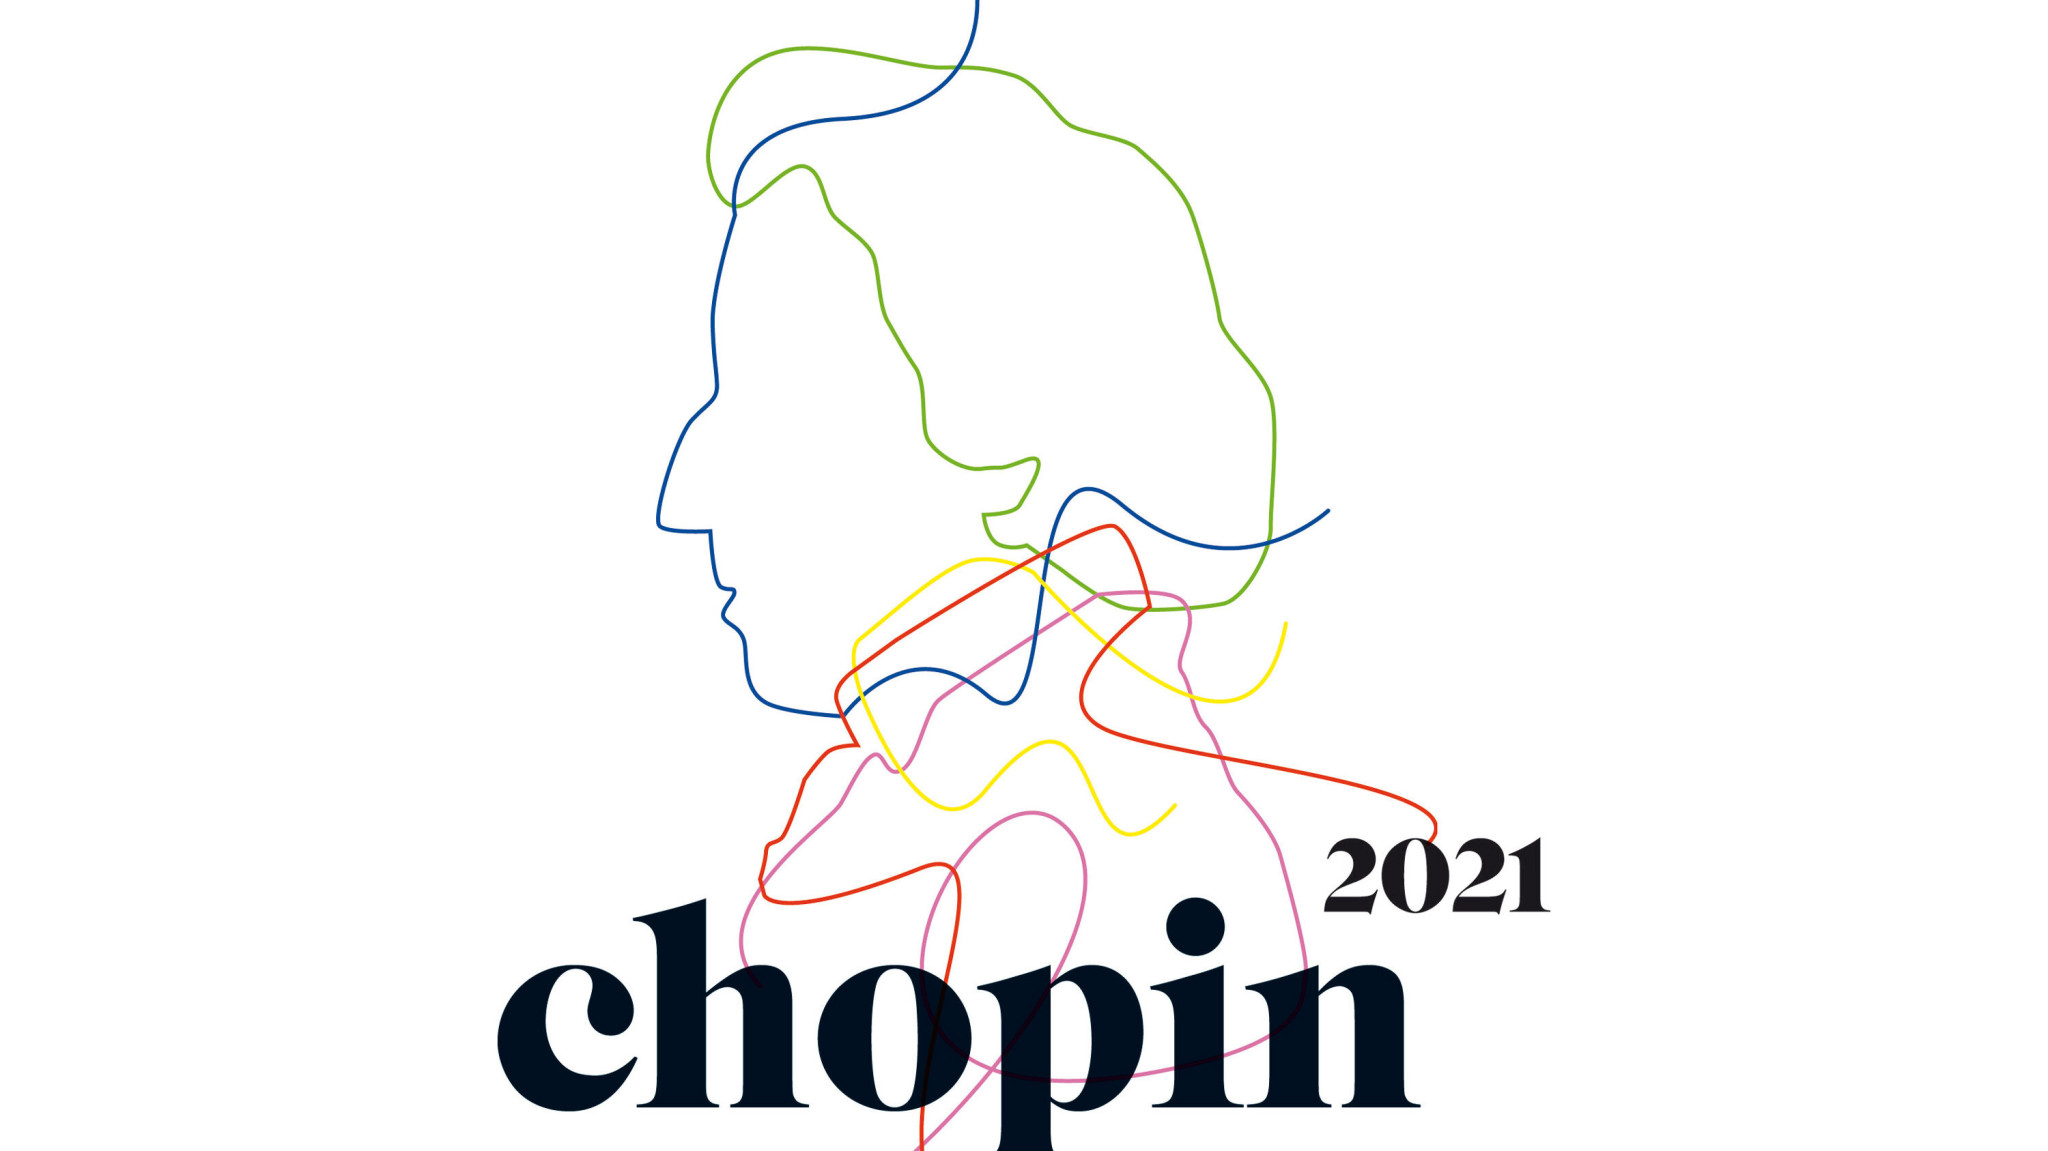 Chopin 2021 – Das musikalische Erbe des visionären Klavierkomponisten in wegweisenden Aufnahmen